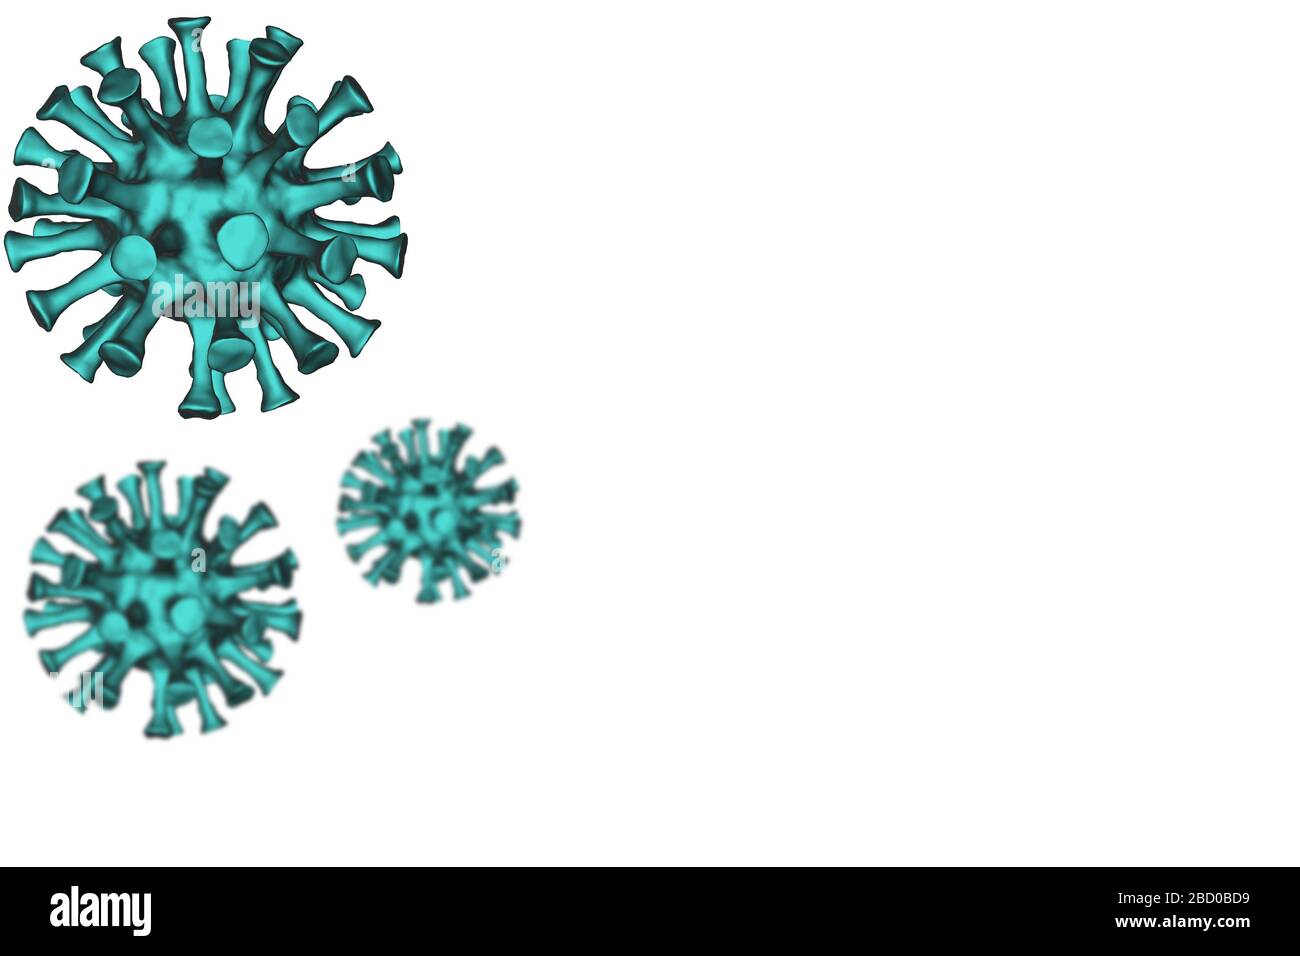 Modello 3d di un virus corona coronavirus covid 19 RNA virus contro uno sfondo semplice che consente spazio per il testo Foto Stock